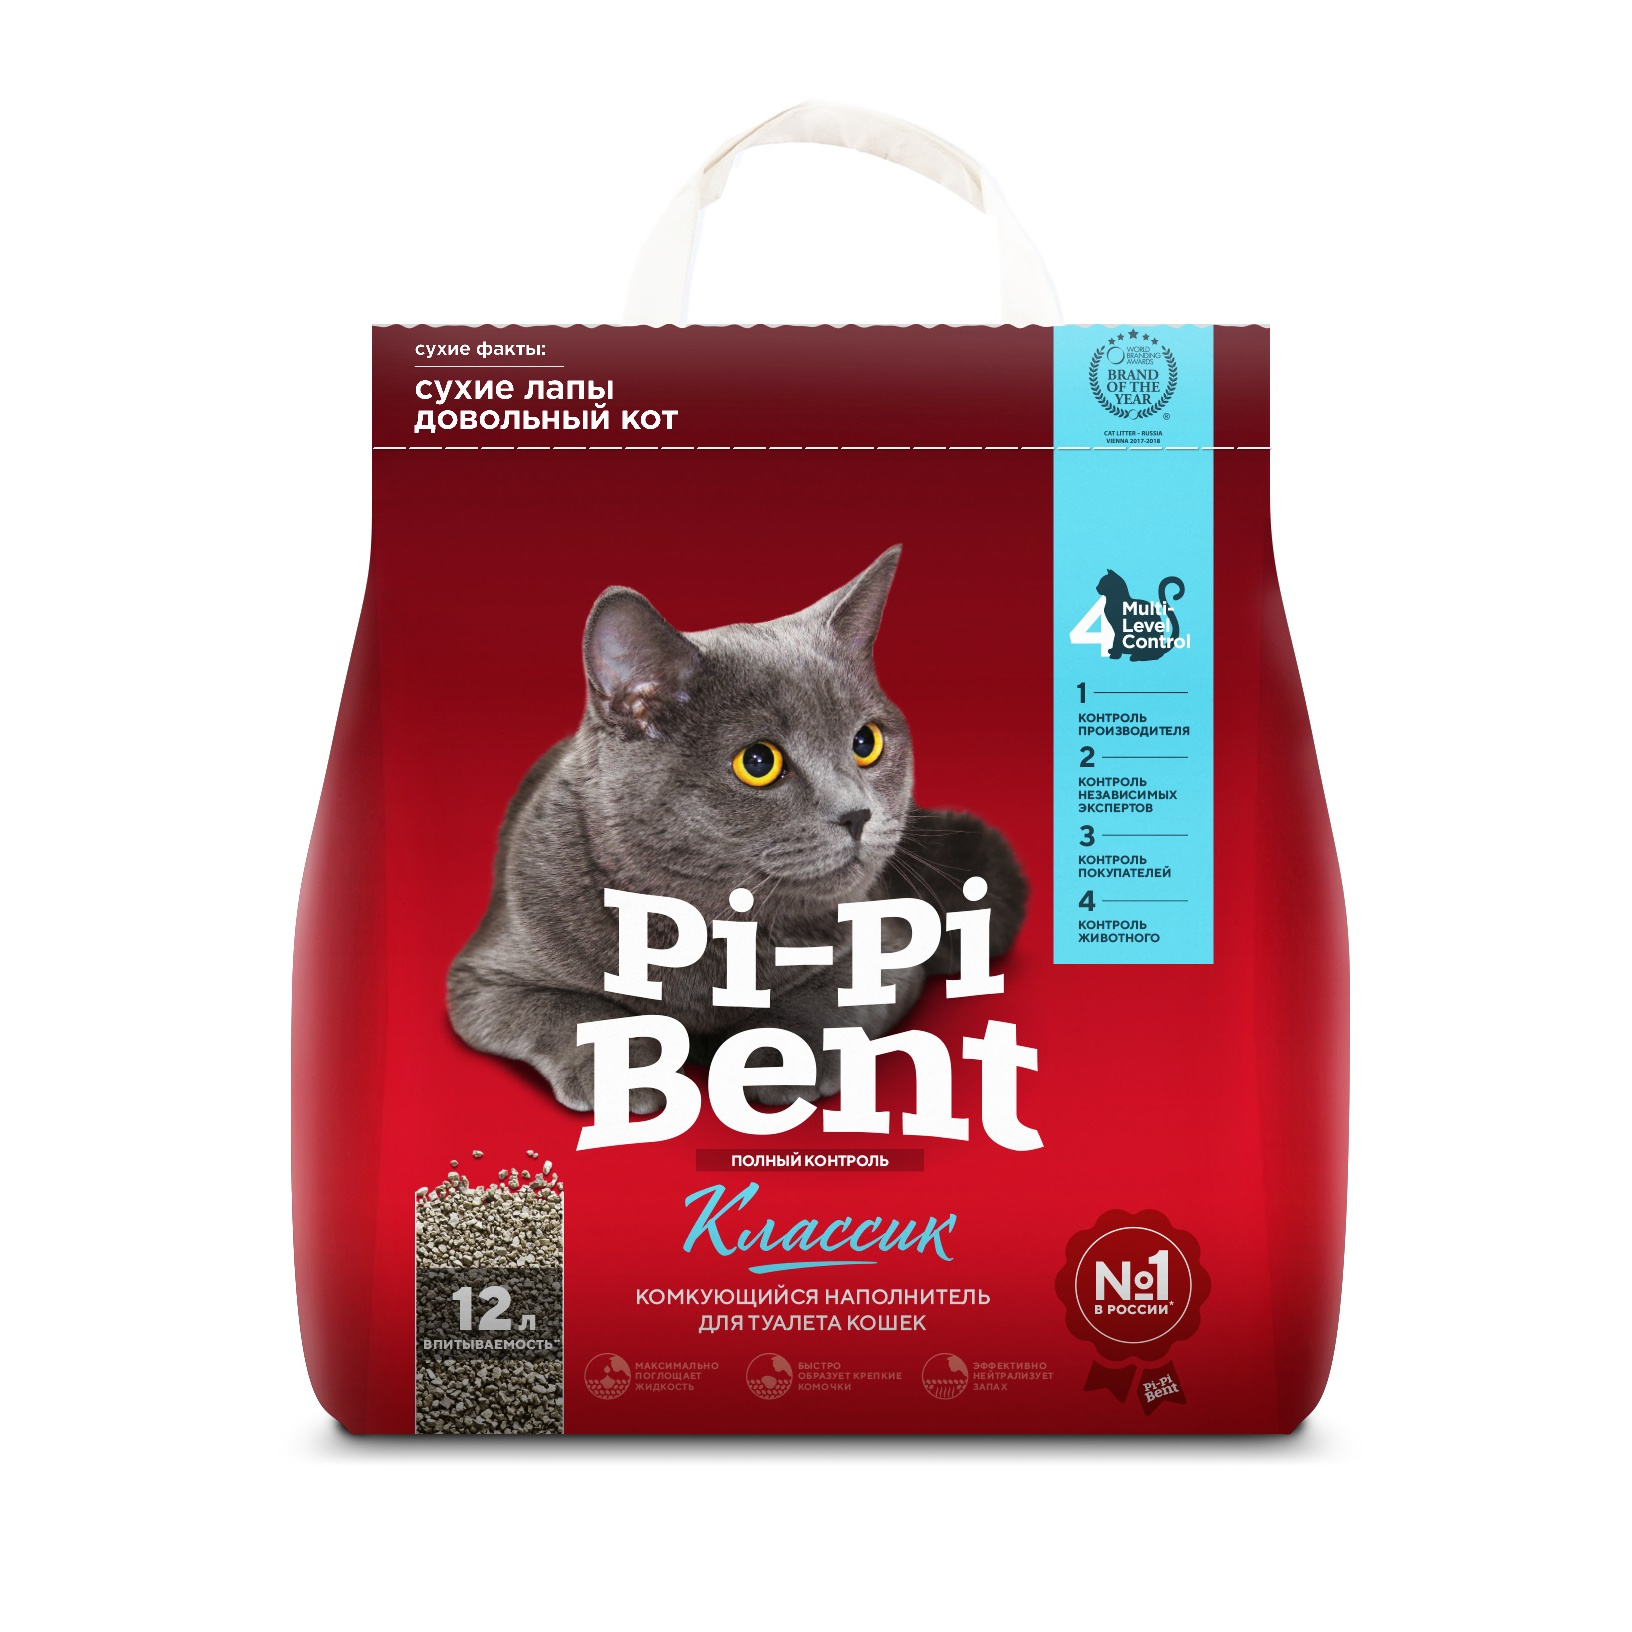 Комкующийся наполнитель для кошек Pi-Pi Bent Classiс бентонитовый, 5 кг, 10 л, 4 шт